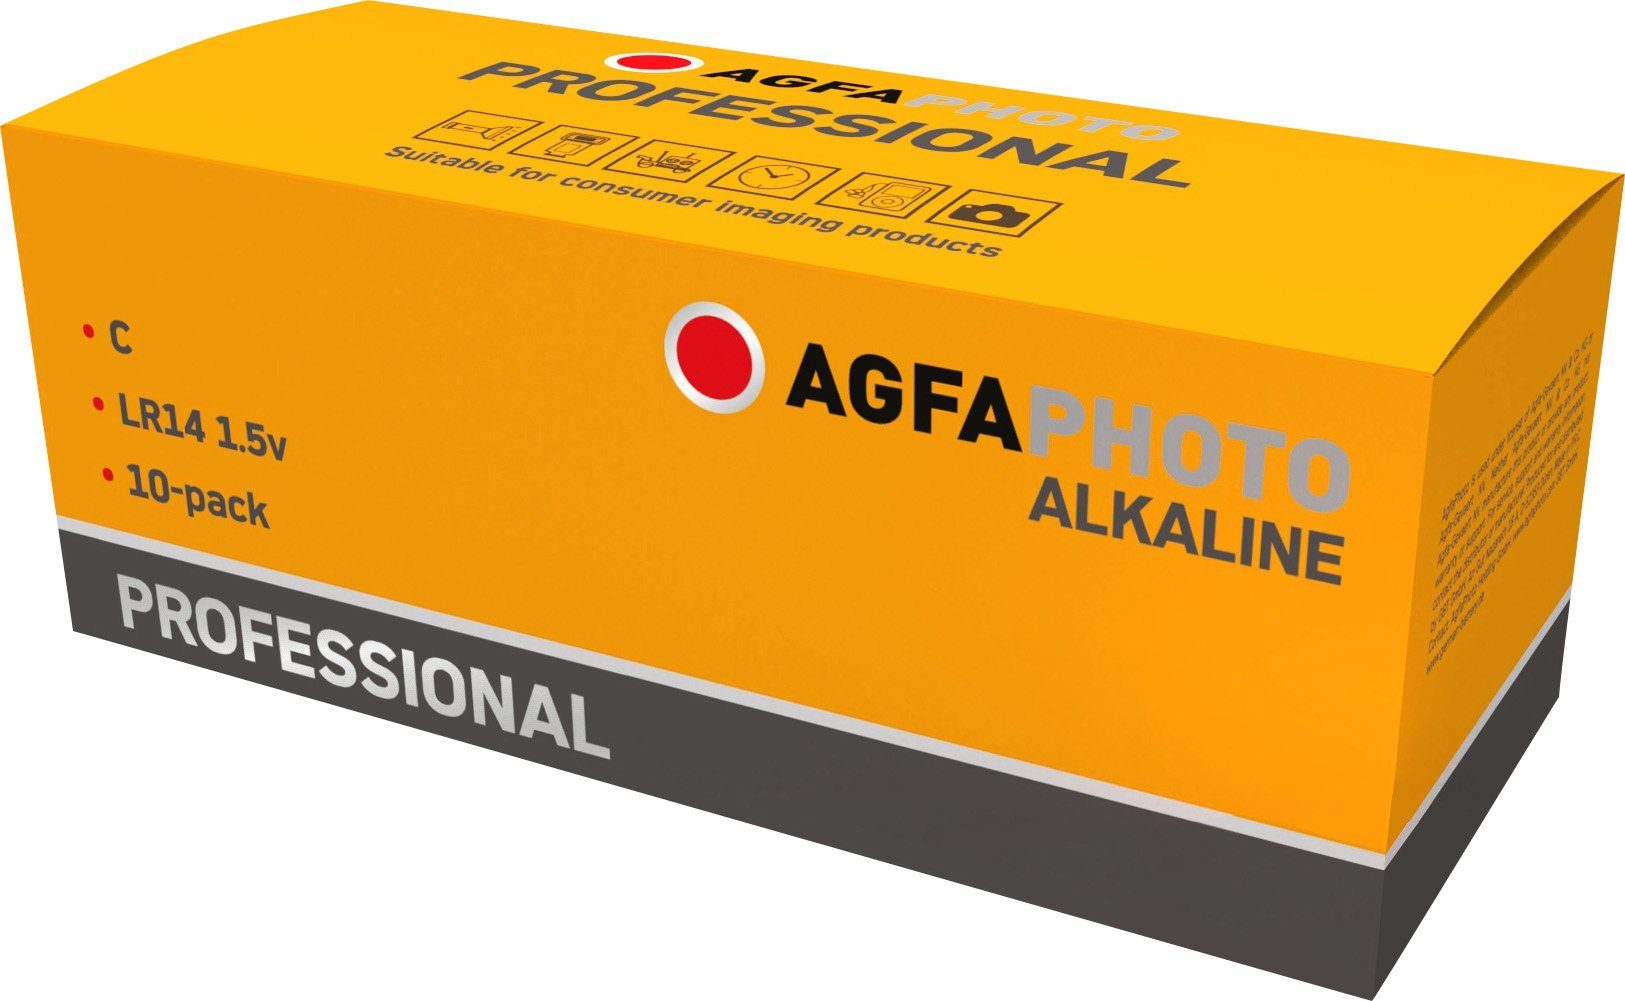 AgfaPhoto Agfaphoto 1.5V Alkaline, Batterie C, Batterie Professional, Retail Baby, LR14,